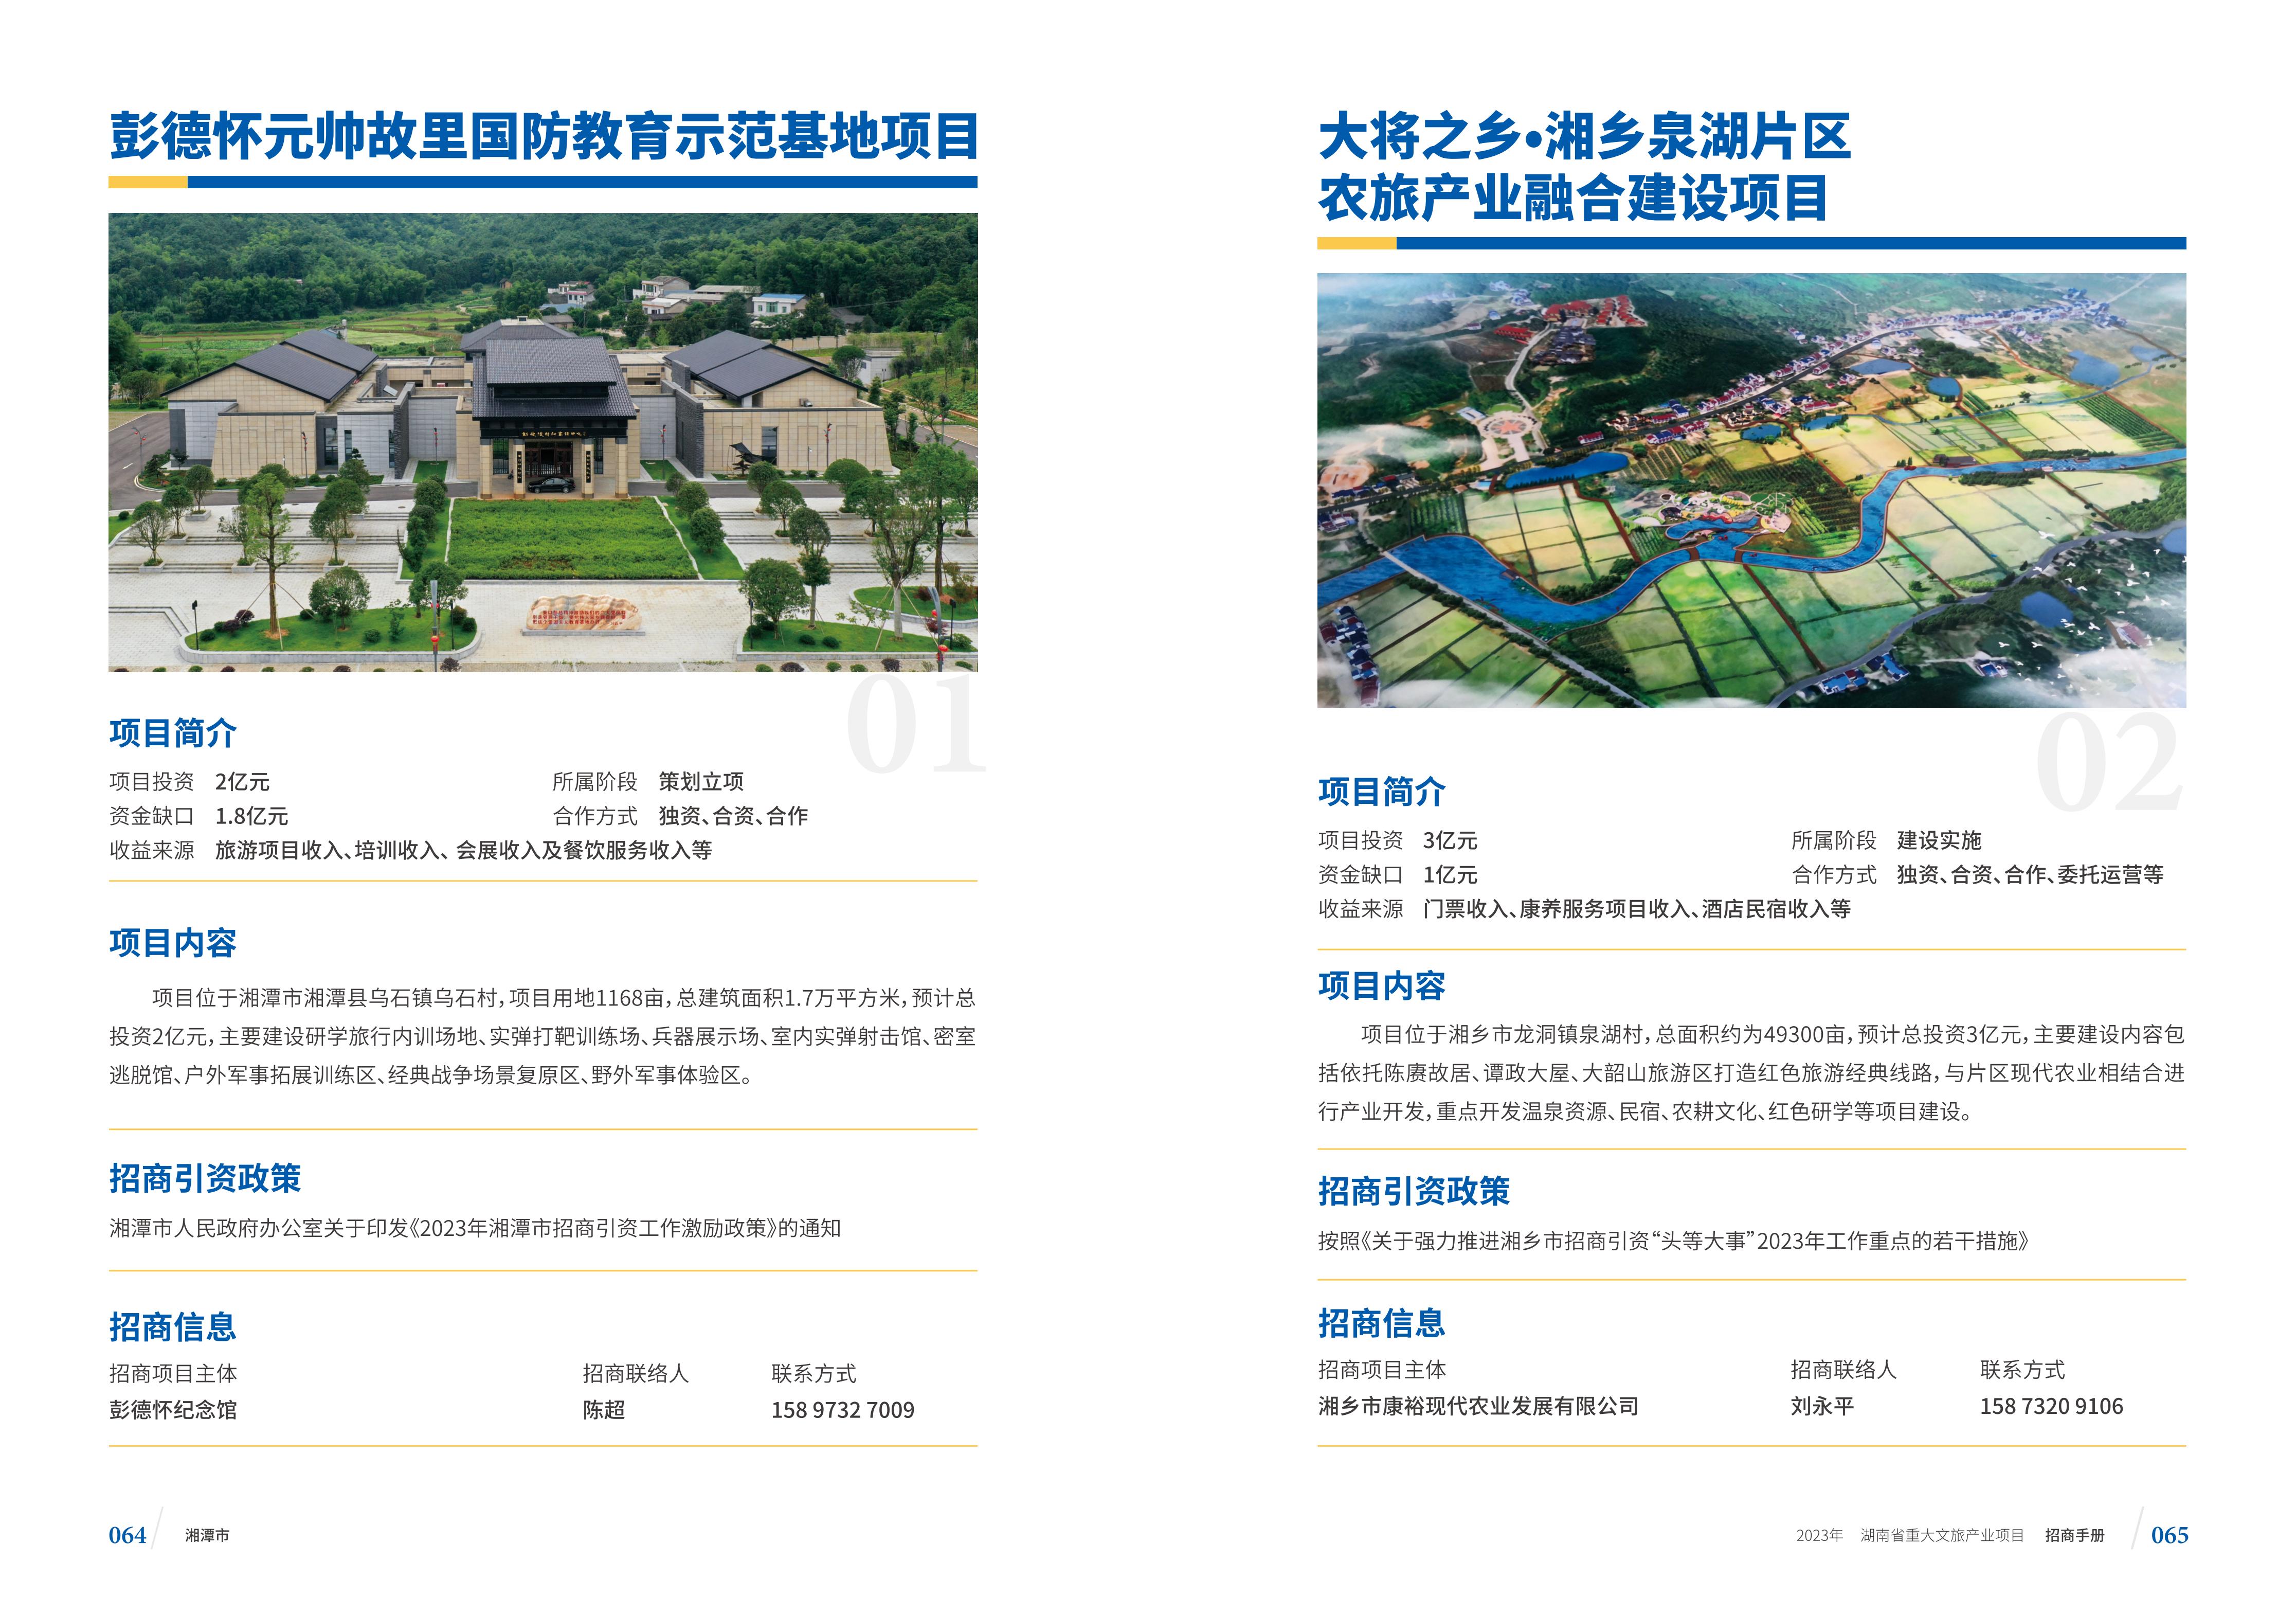 湖南省重大文旅产业项目招手册线上链接版_40.jpg